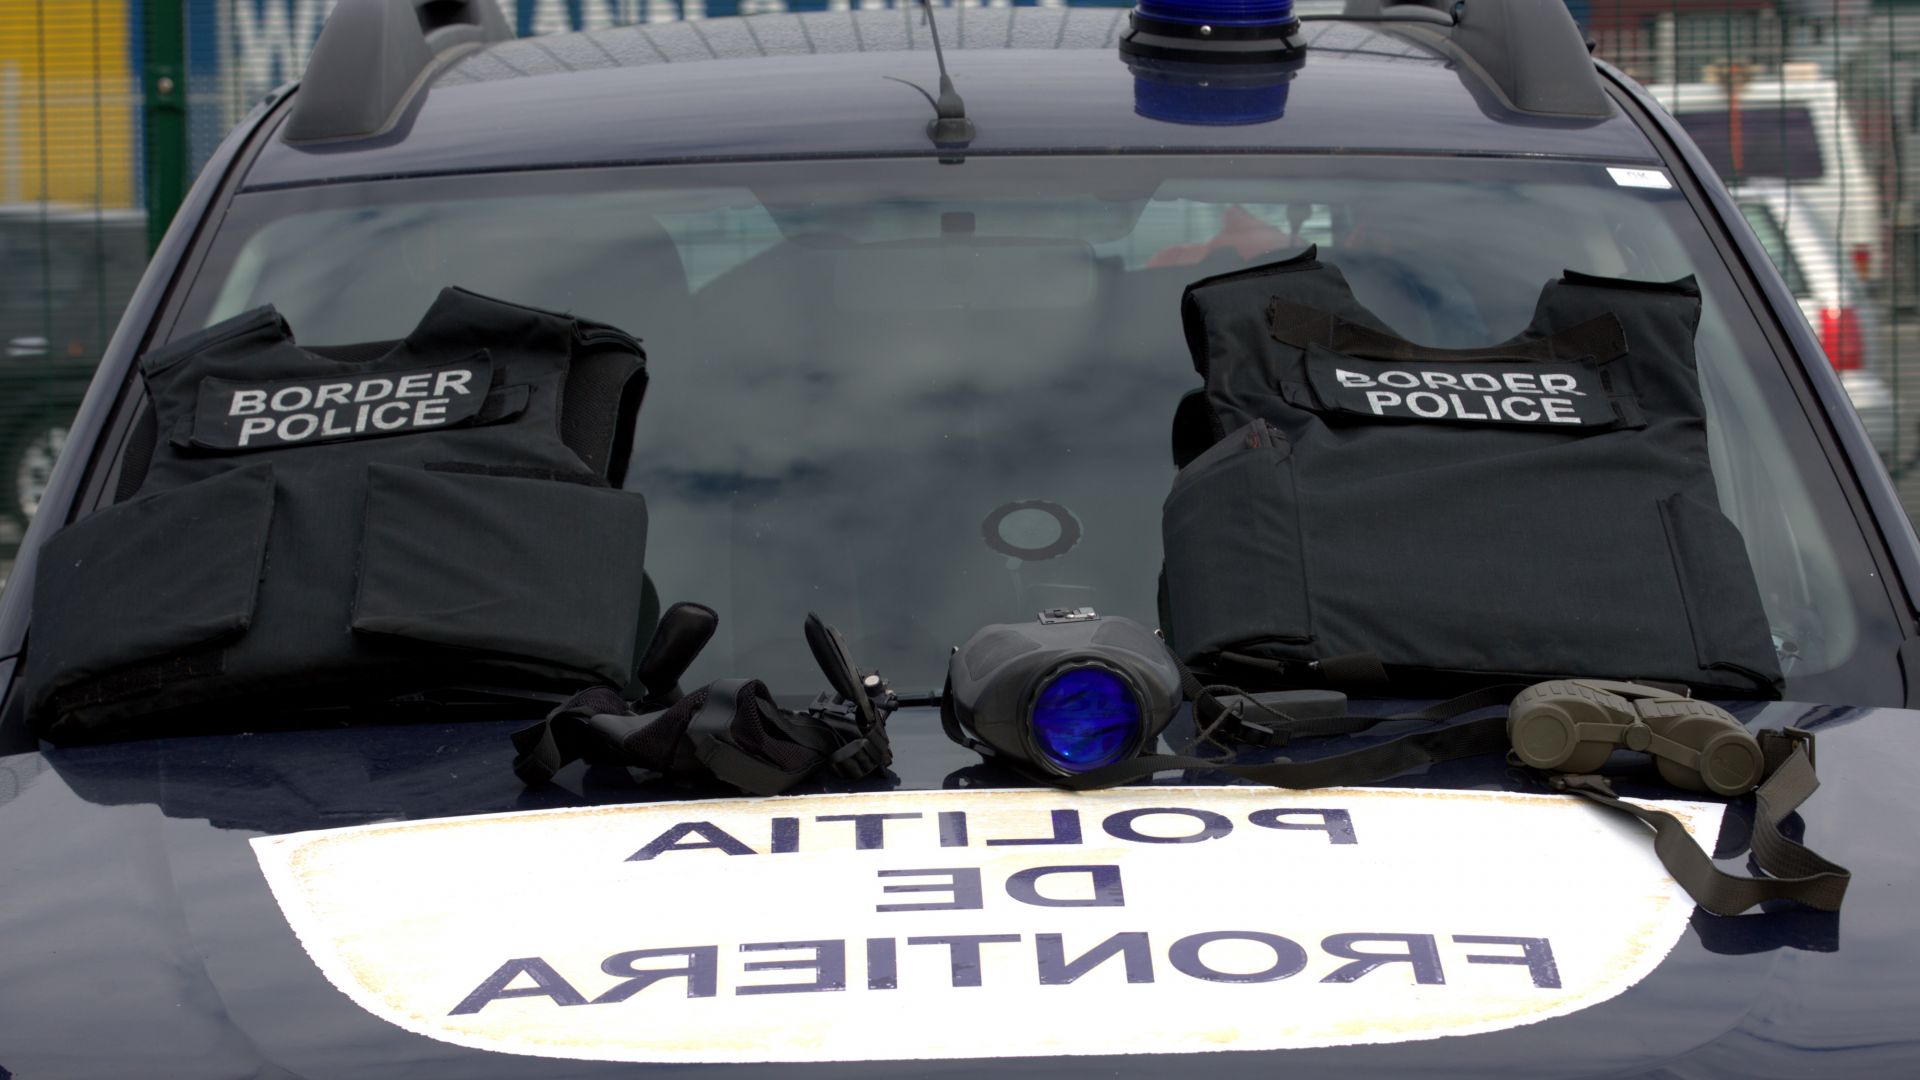 Гръцката полиция откри шестима мигранти в български хладилен камион. Те